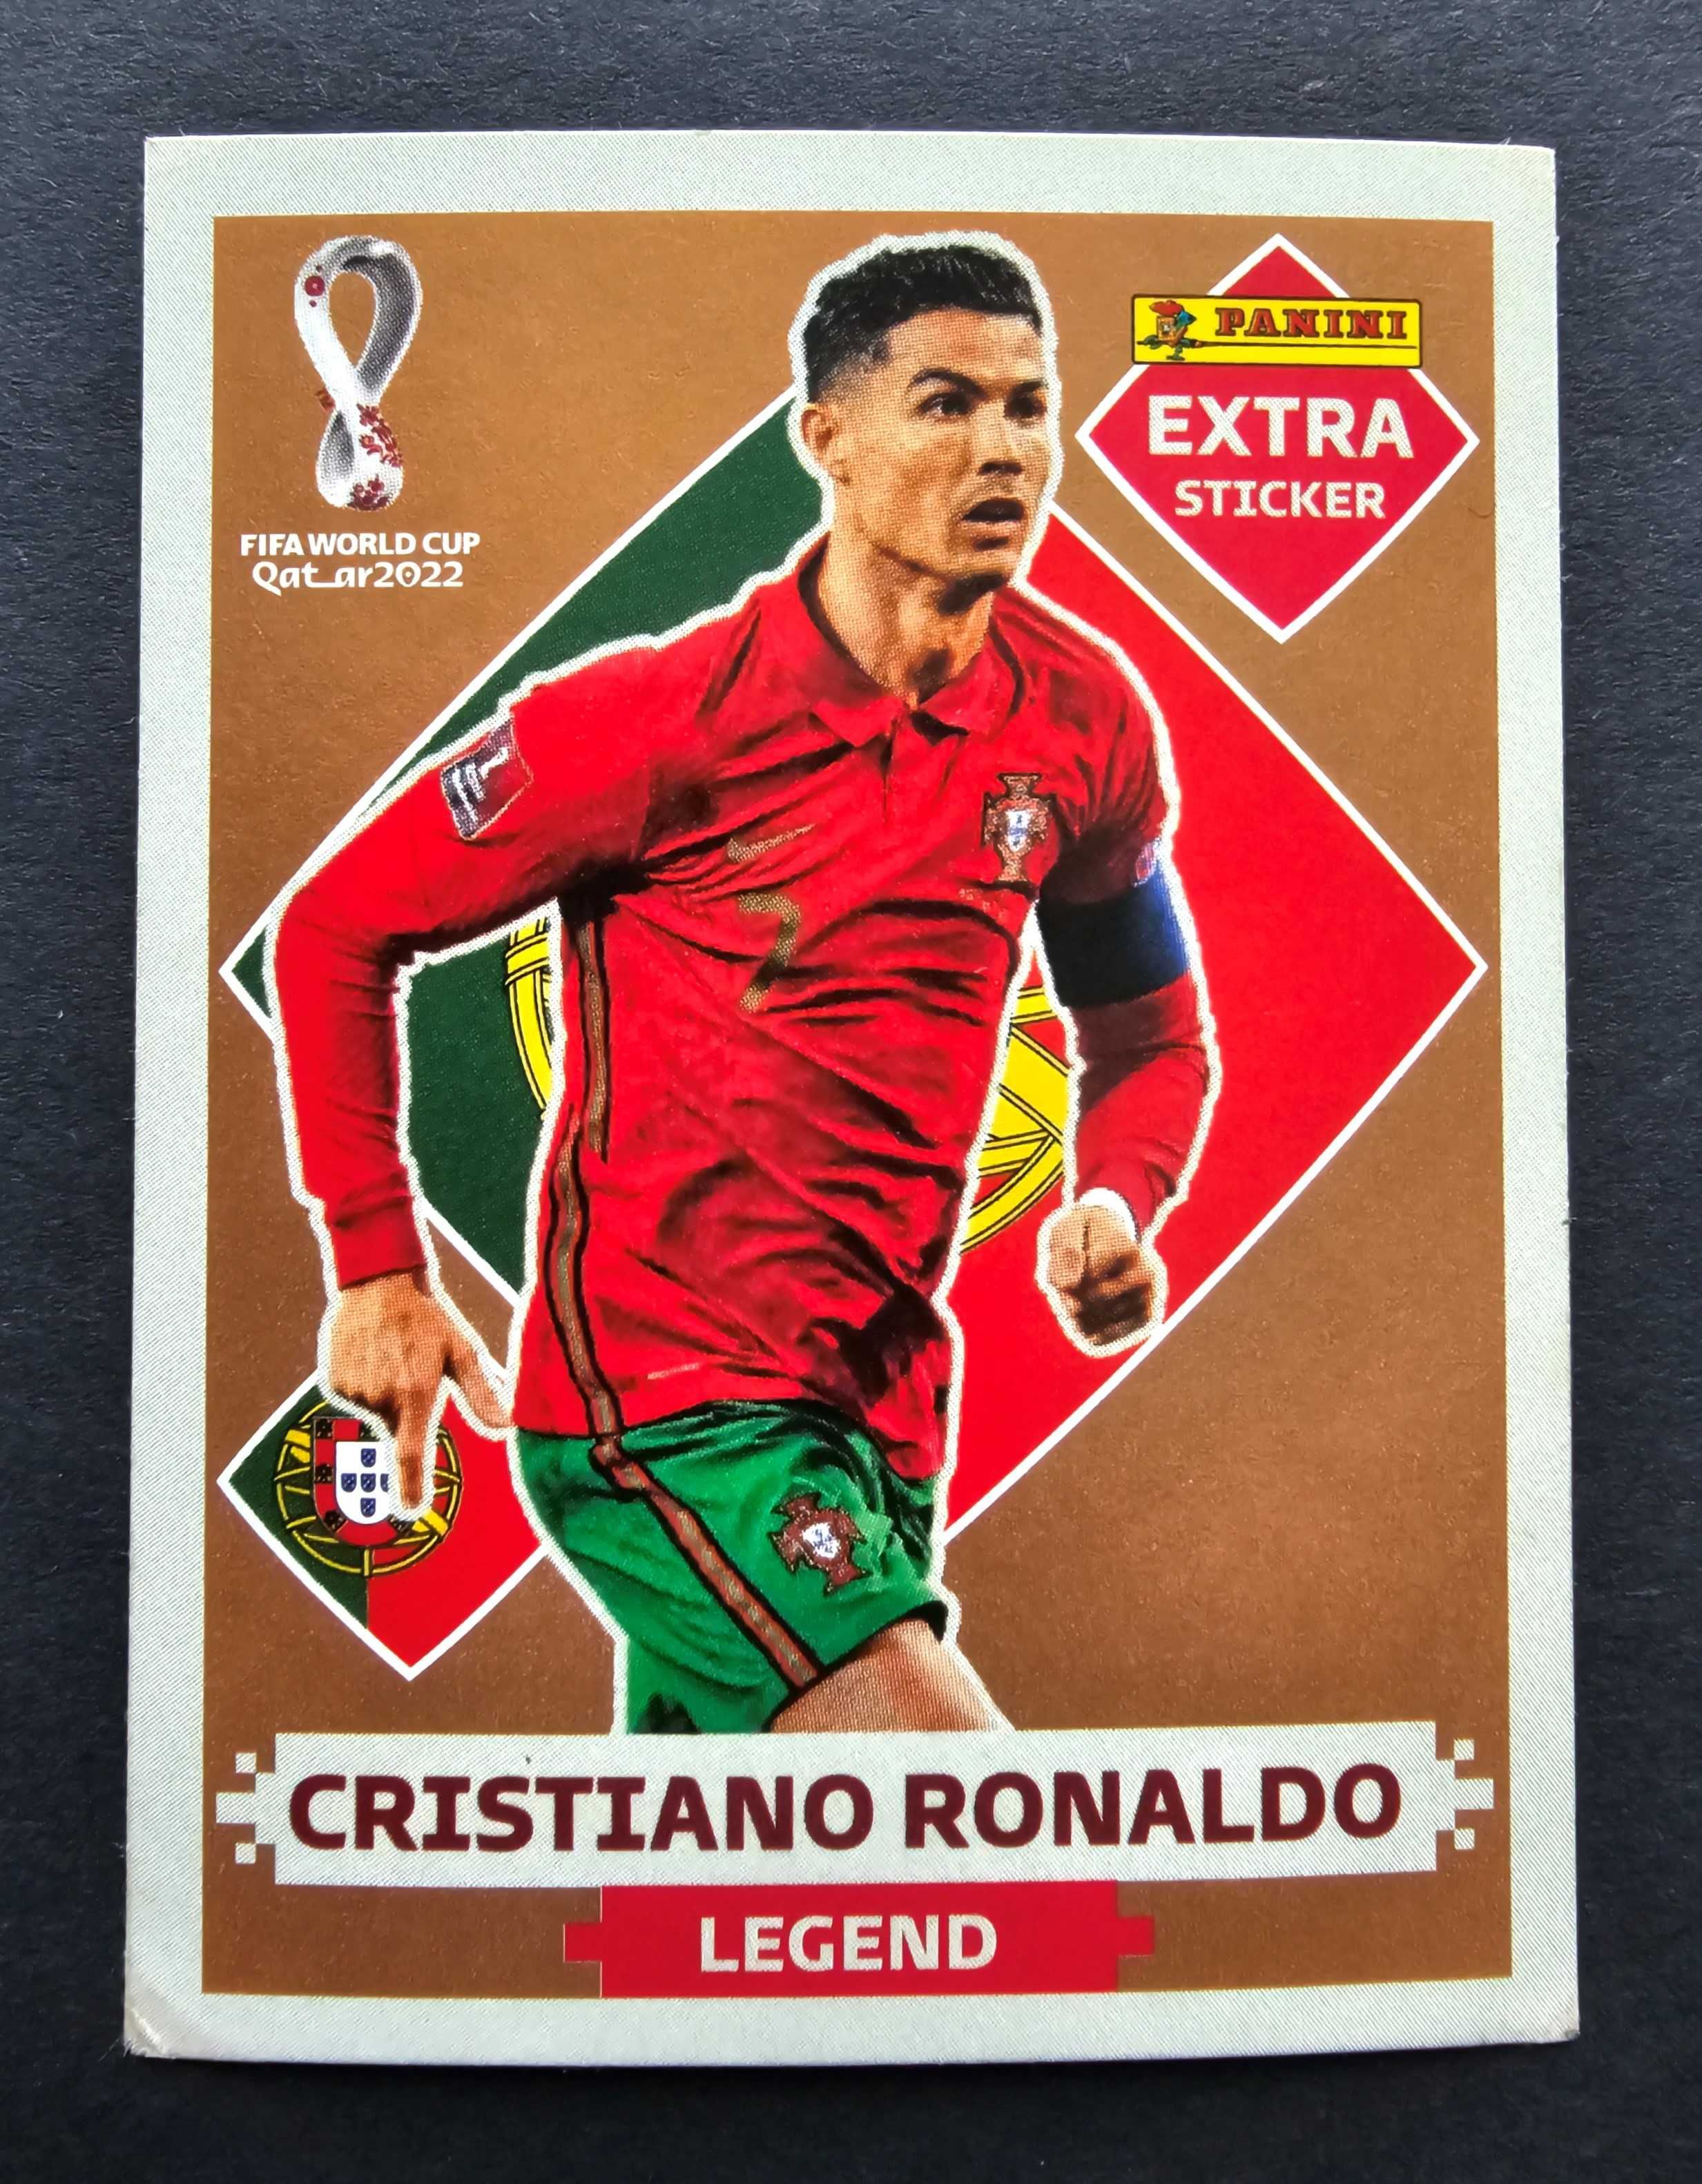 Extra sticker Cristiano Ronaldo Bronze FIFA World Cup 2022 Panini